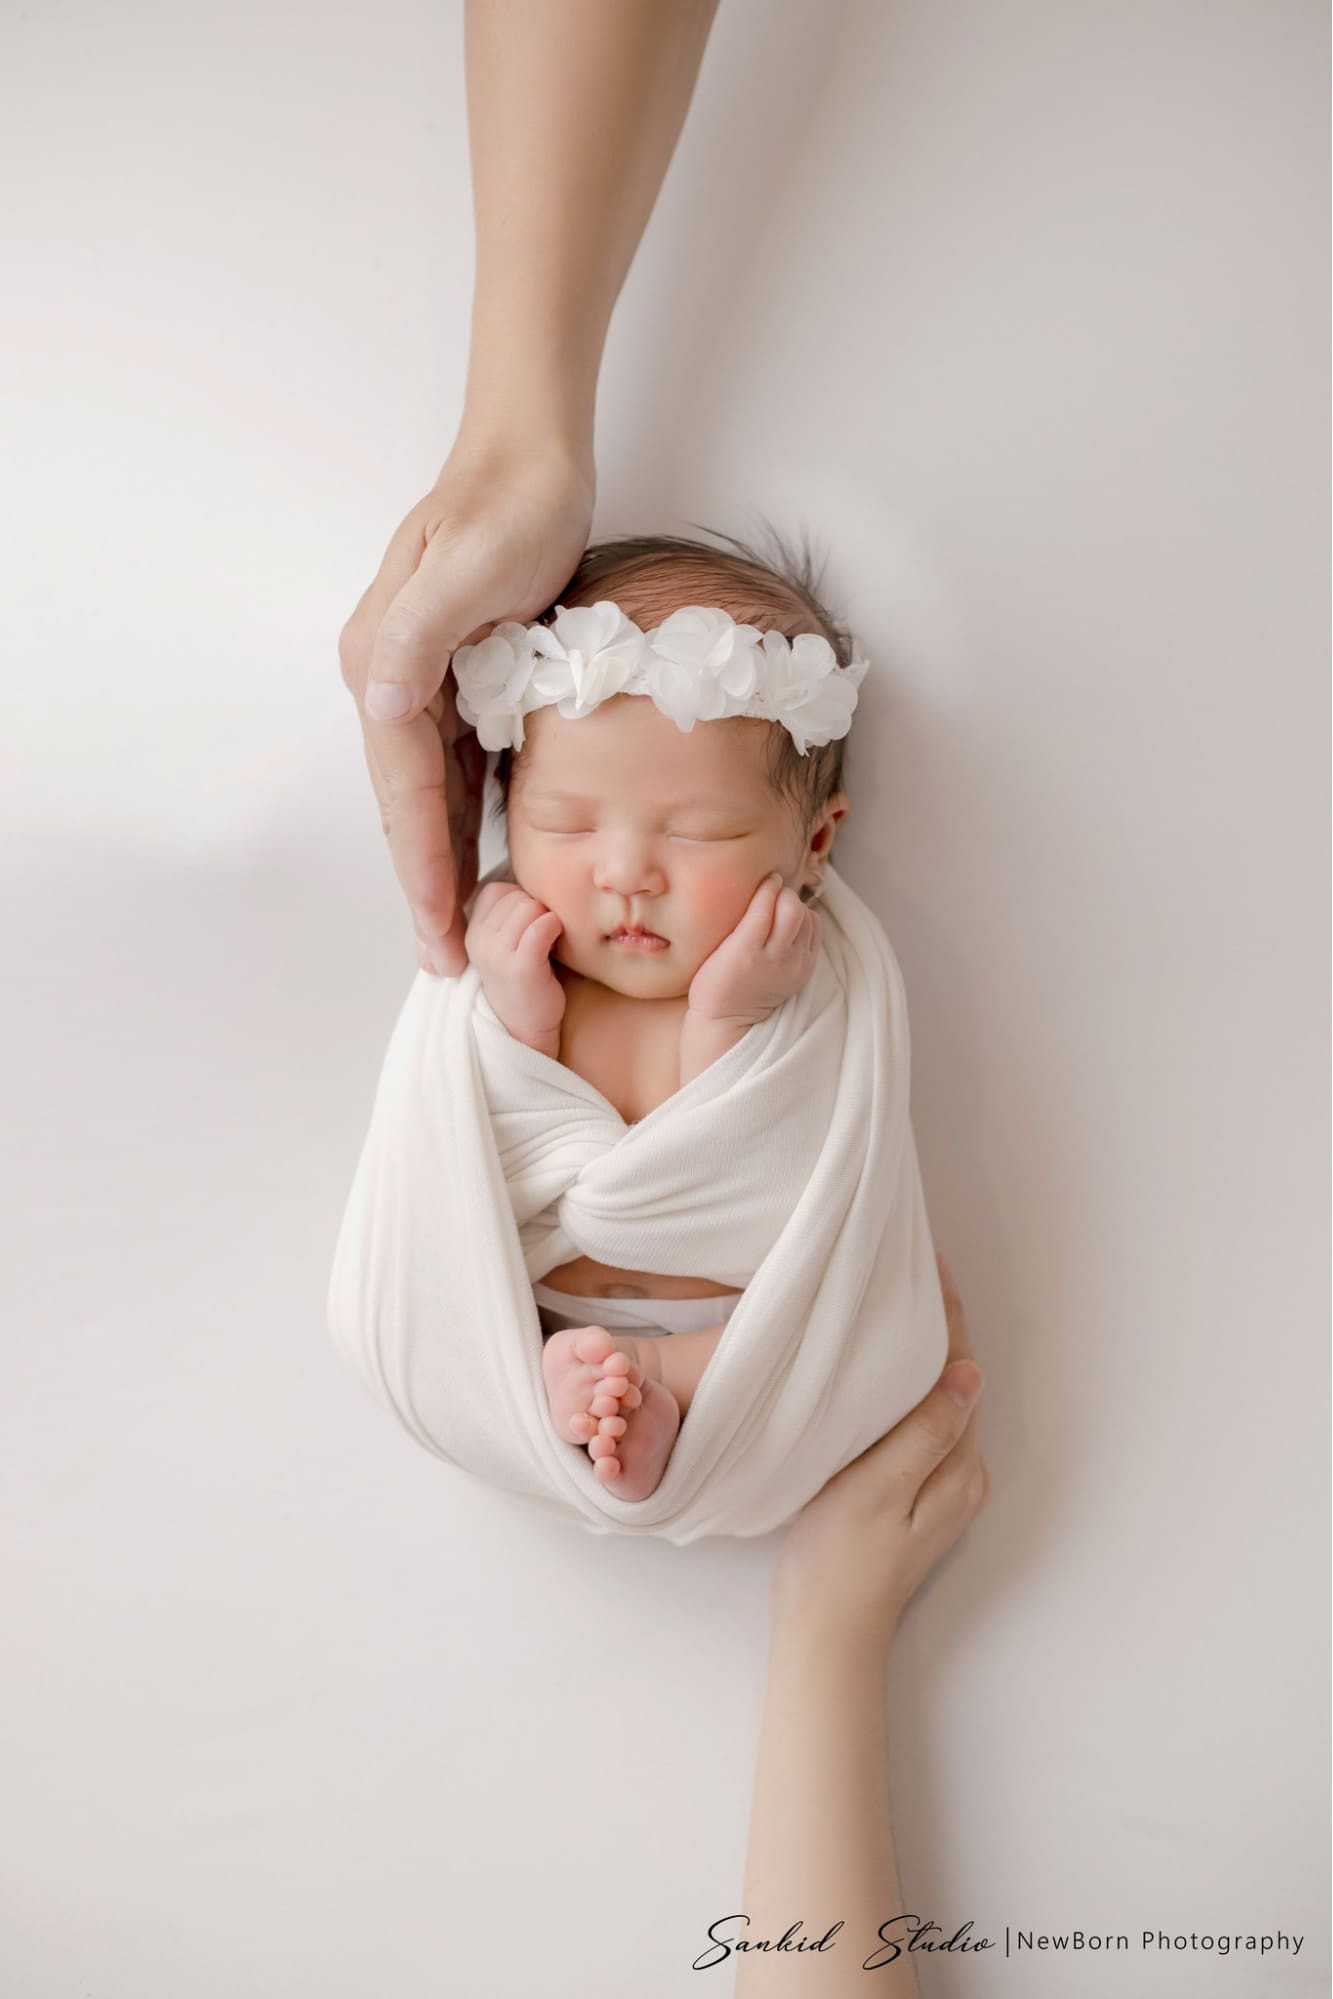 Chụp ảnh cho trẻ sơ sinh tại nhà có rất nhiều ưu điểm